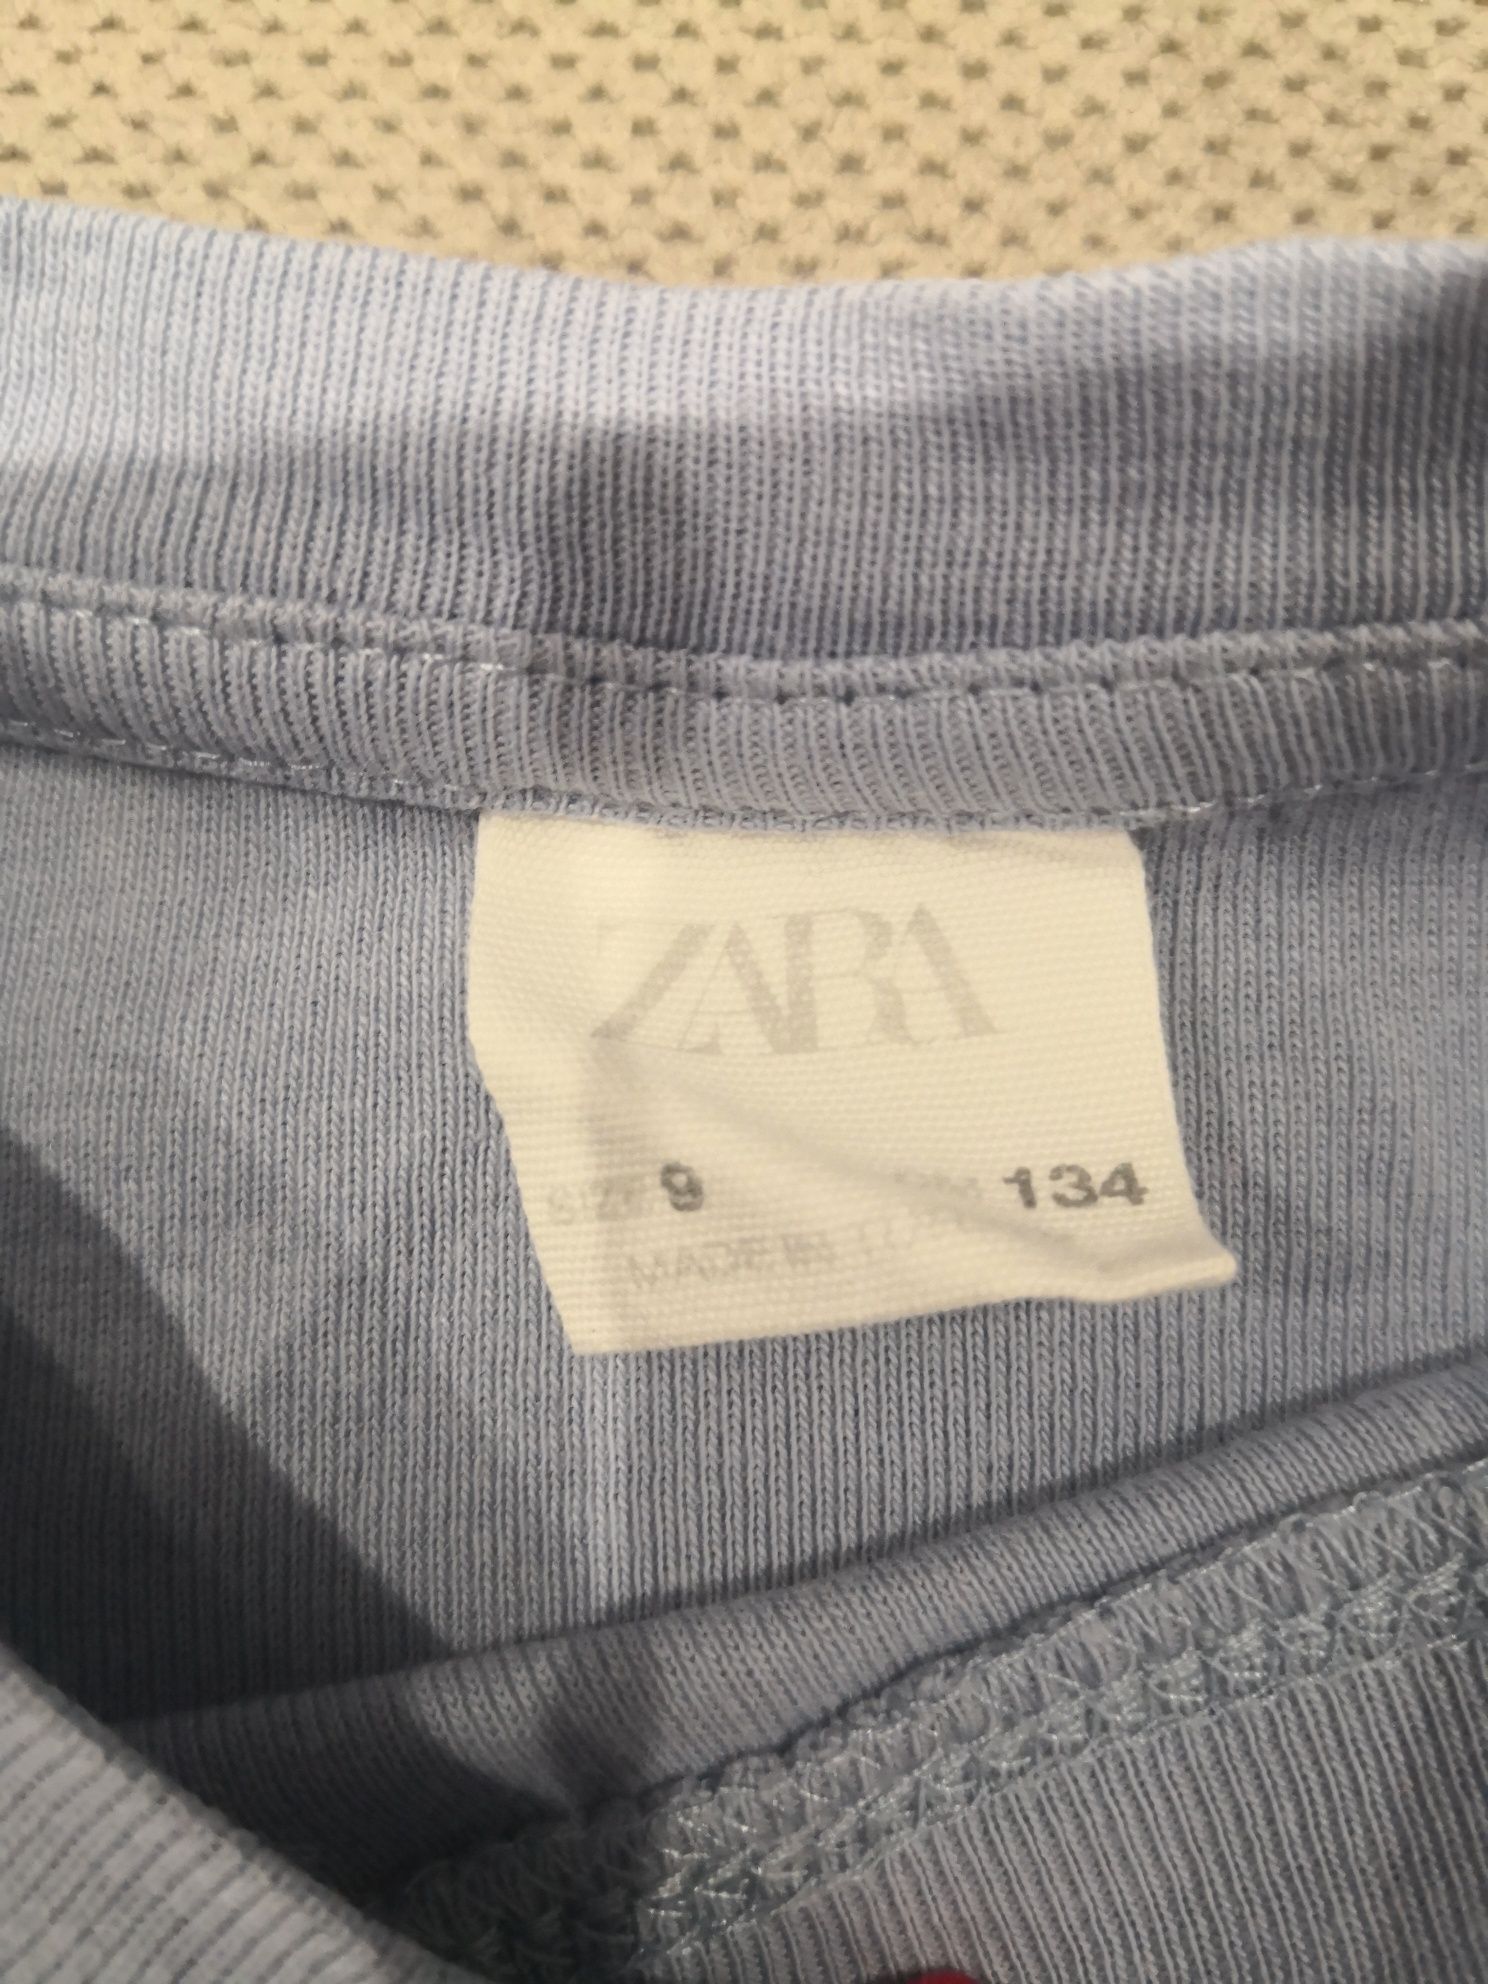 Bluzka rozmiar 134 firmy Zara